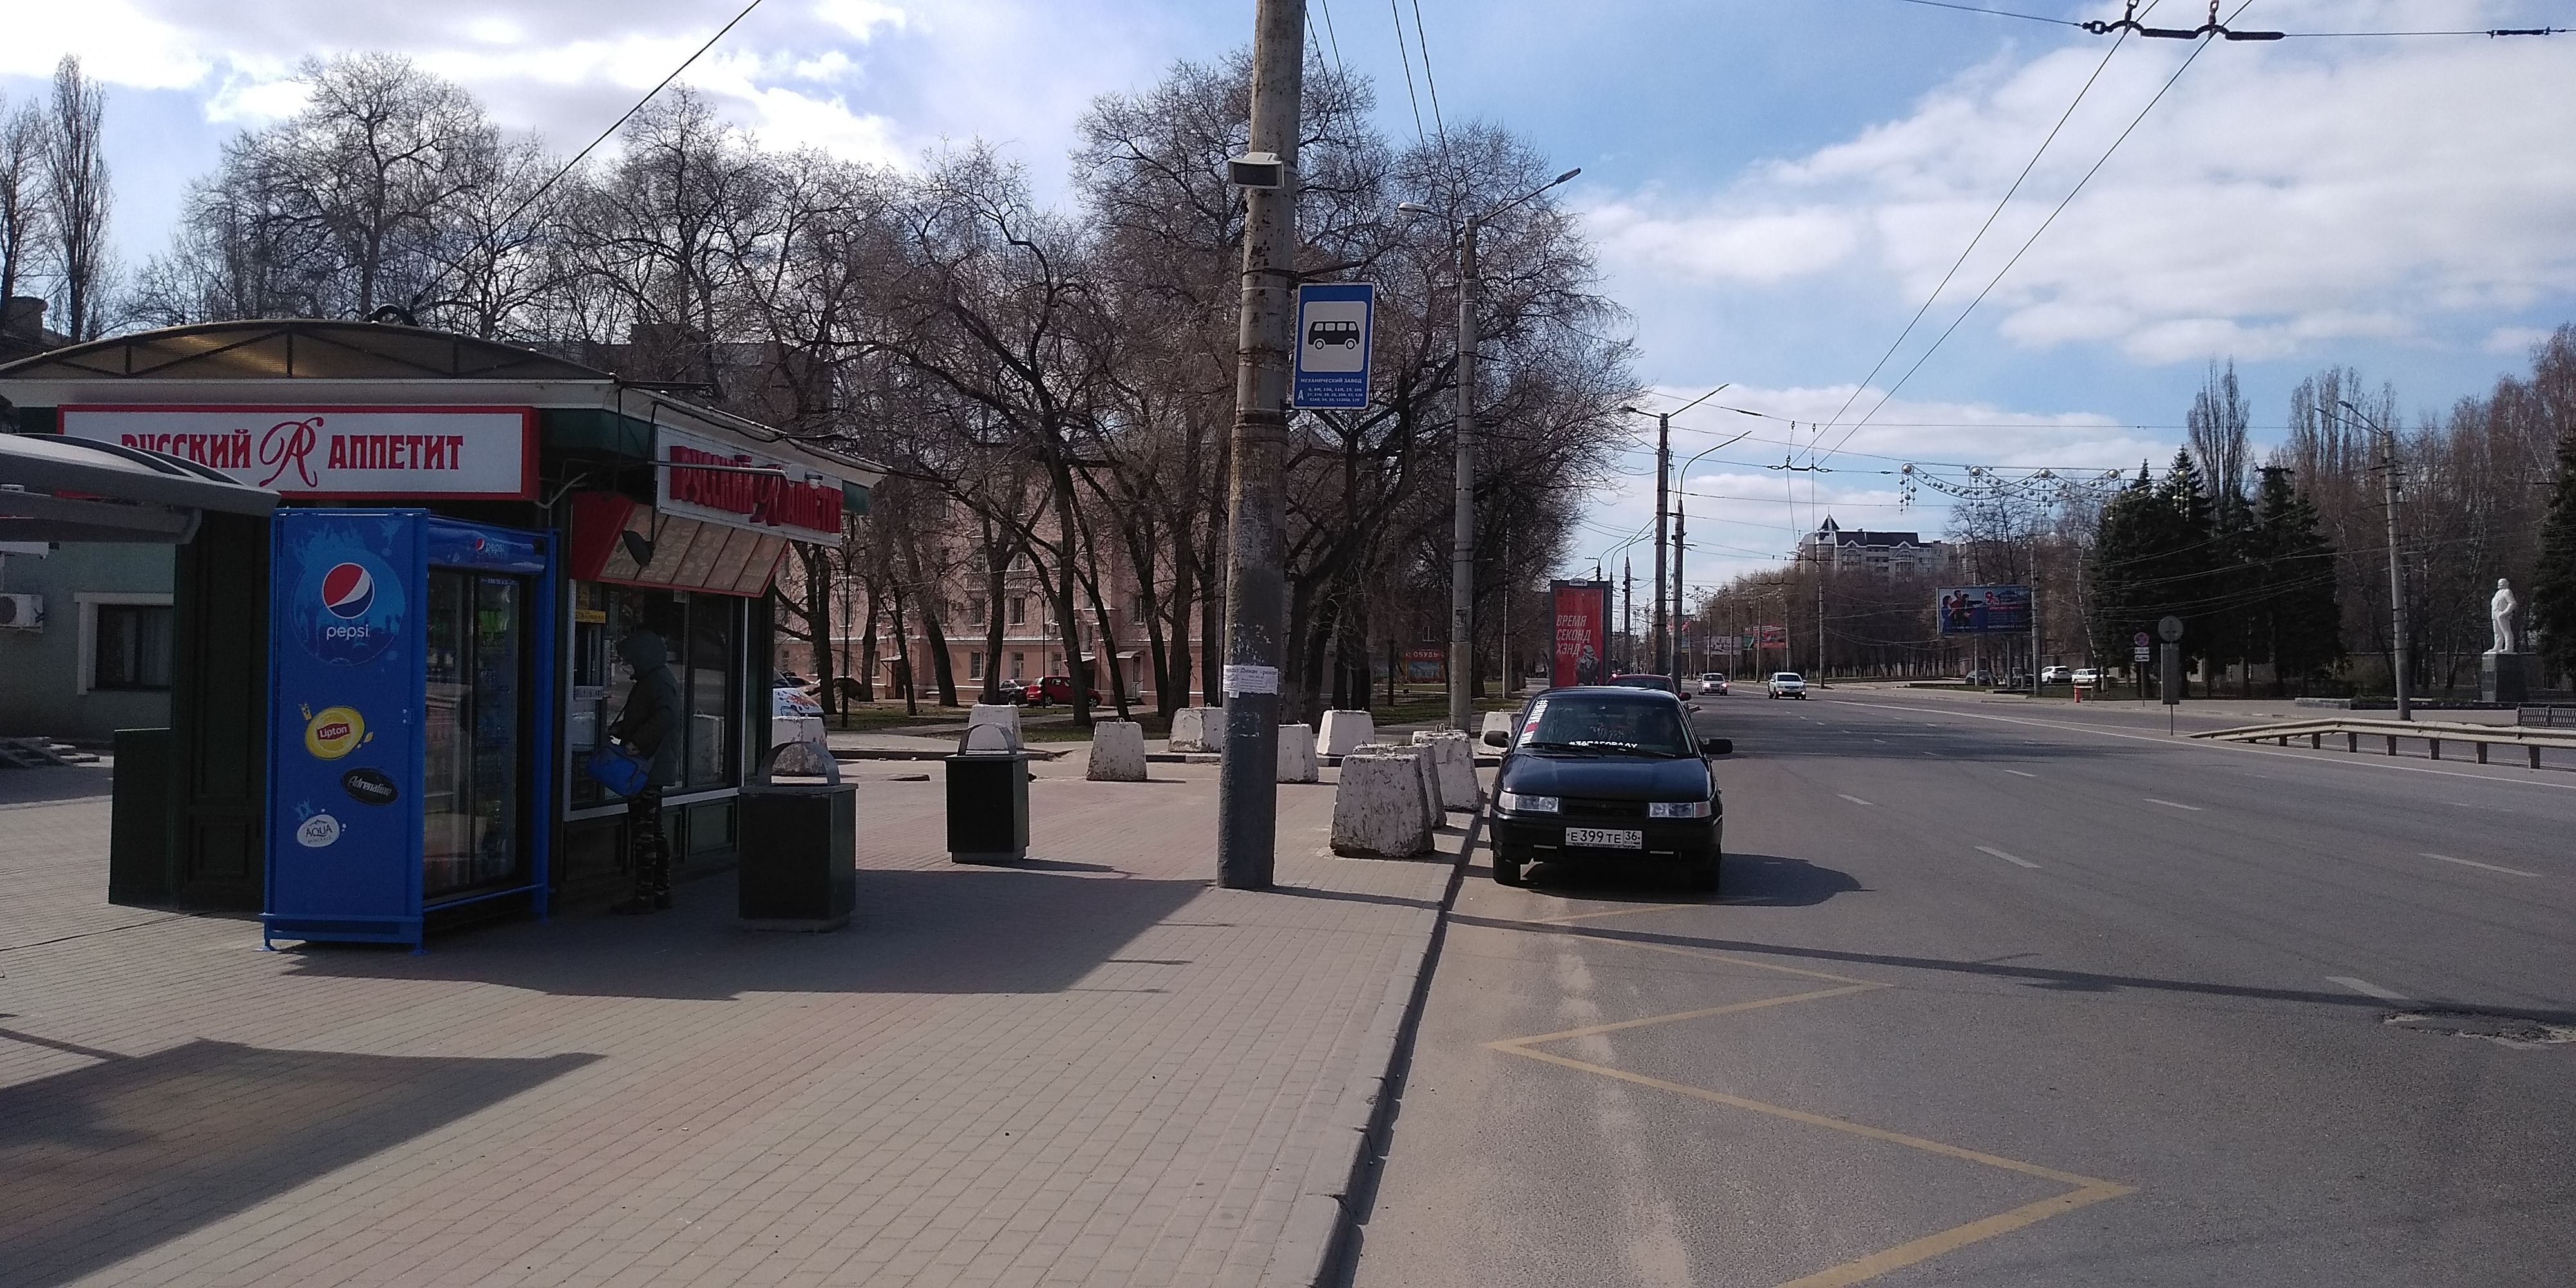 На дороги Воронежа вышли 607 единиц общественного транспорта  - фото 1